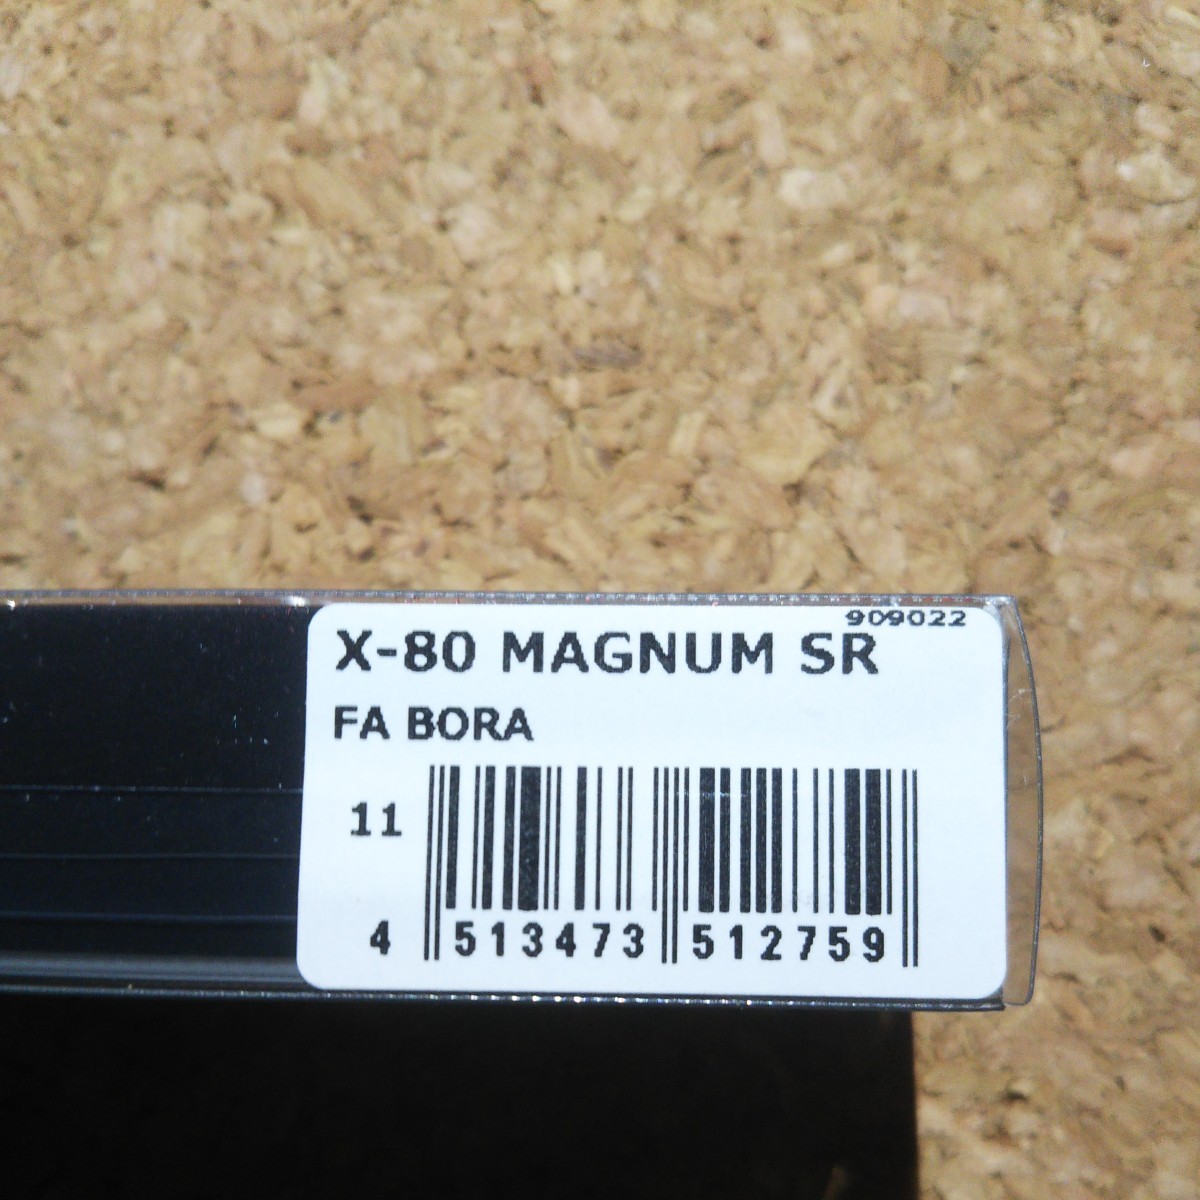  メガバス X-80マグナム SR X-80 MAGNUM SR FA BORA _画像2